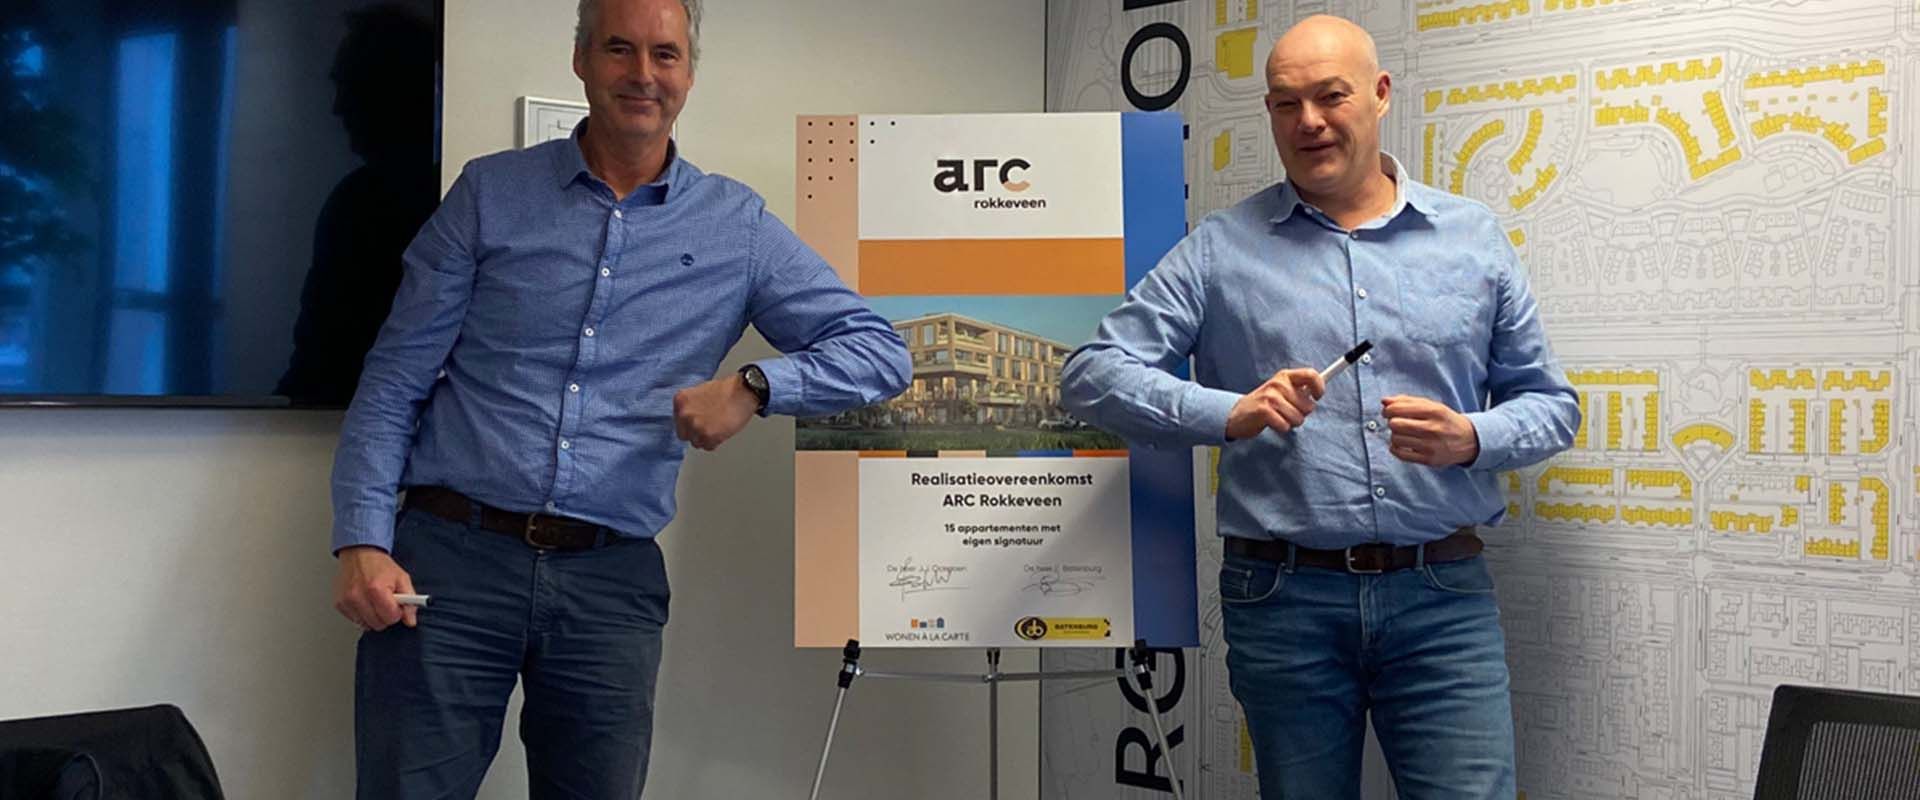 Realisatie-overeenkomst ARC Rokkeveen in Zoetermeer getekend